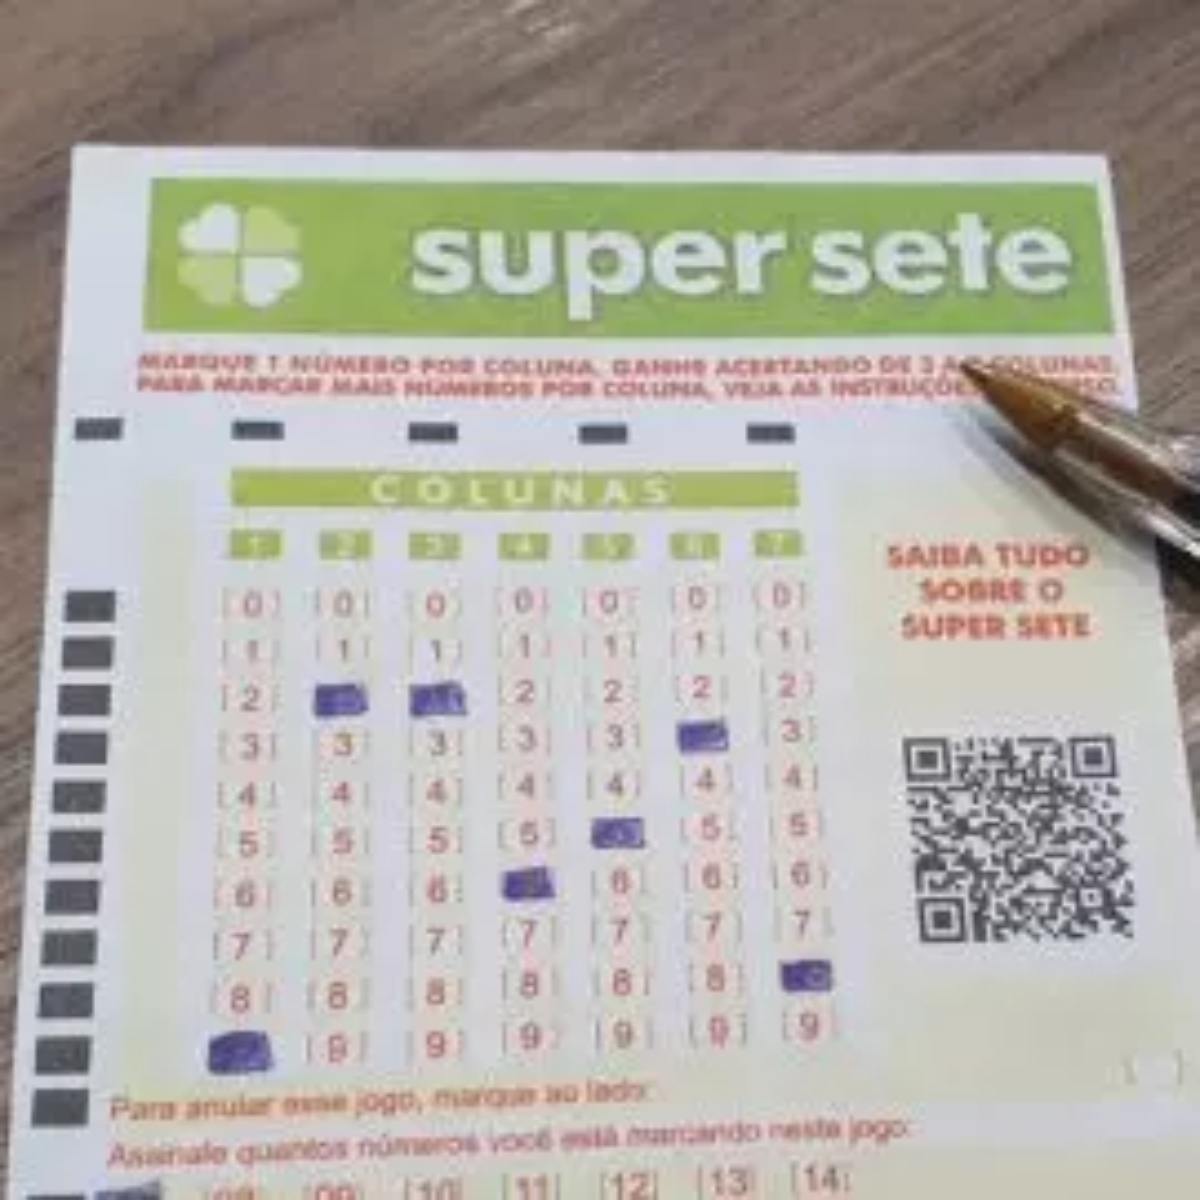 Nova loteria da Caixa, Super sete (Super 7) terá sorteios às 15h